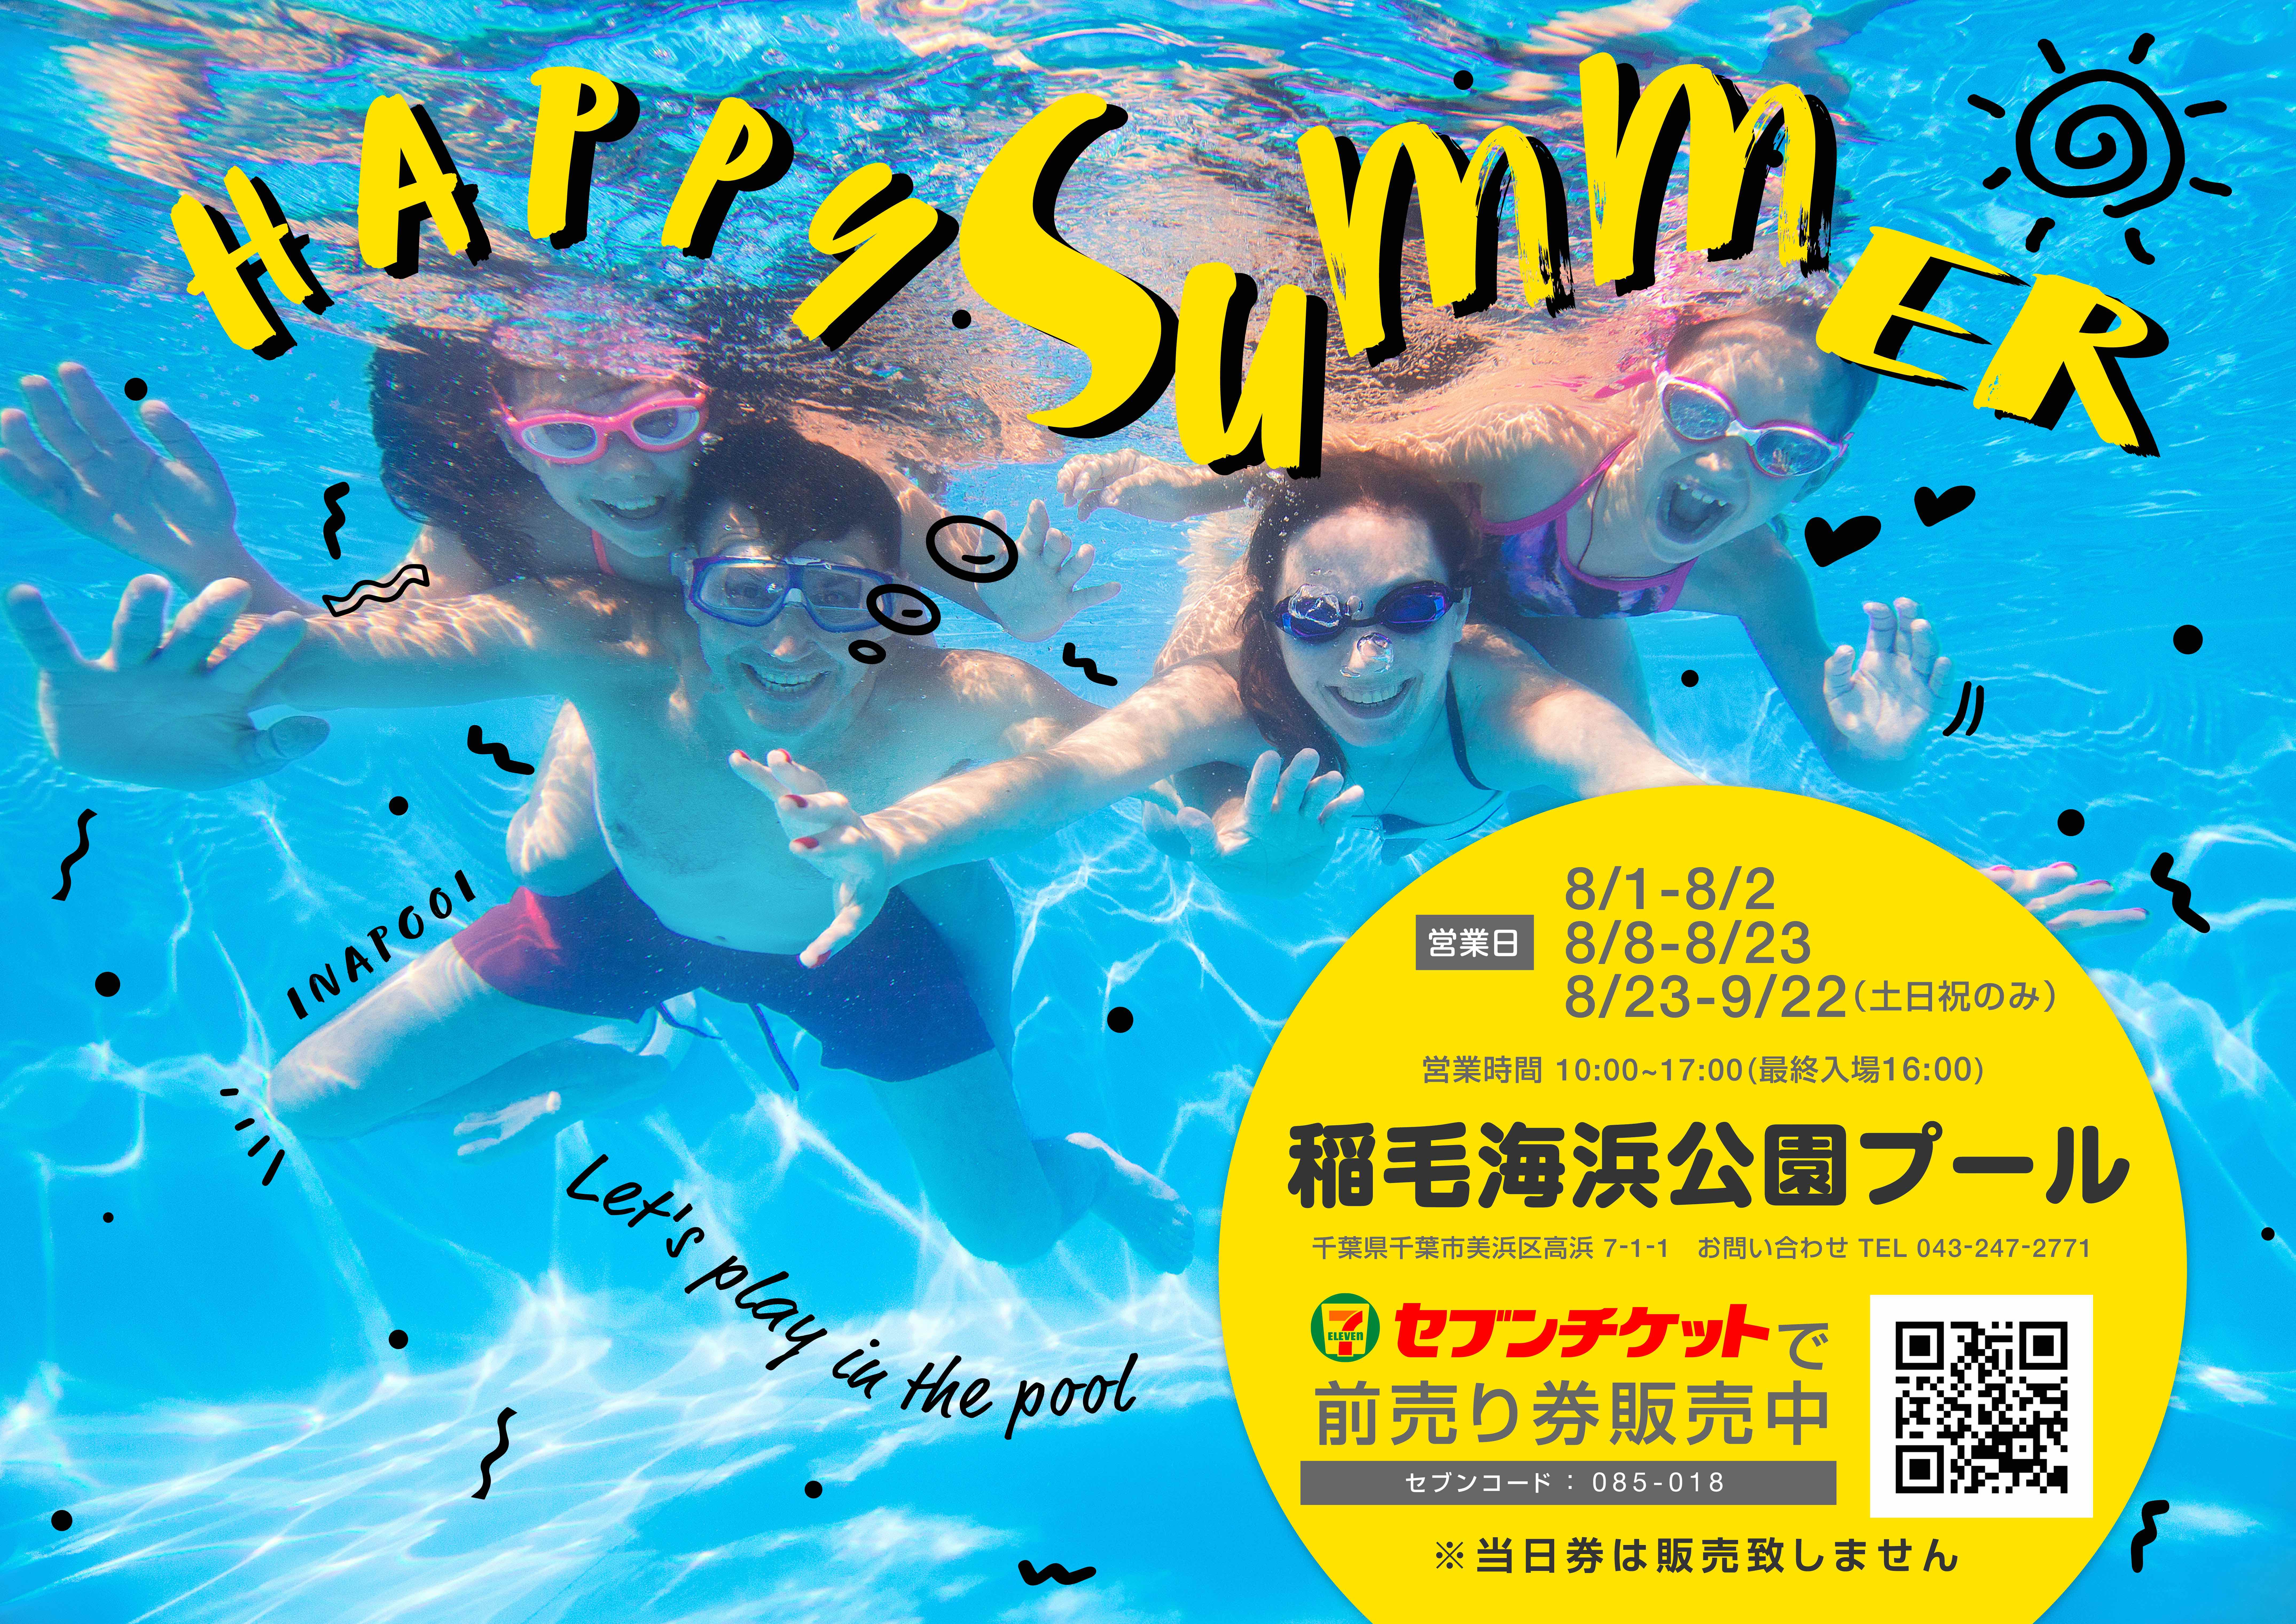 年の夏も思いっきり満喫しよう 8月1日 千葉市稲毛海浜公園プール開園 株式会社ワールドパークのプレスリリース